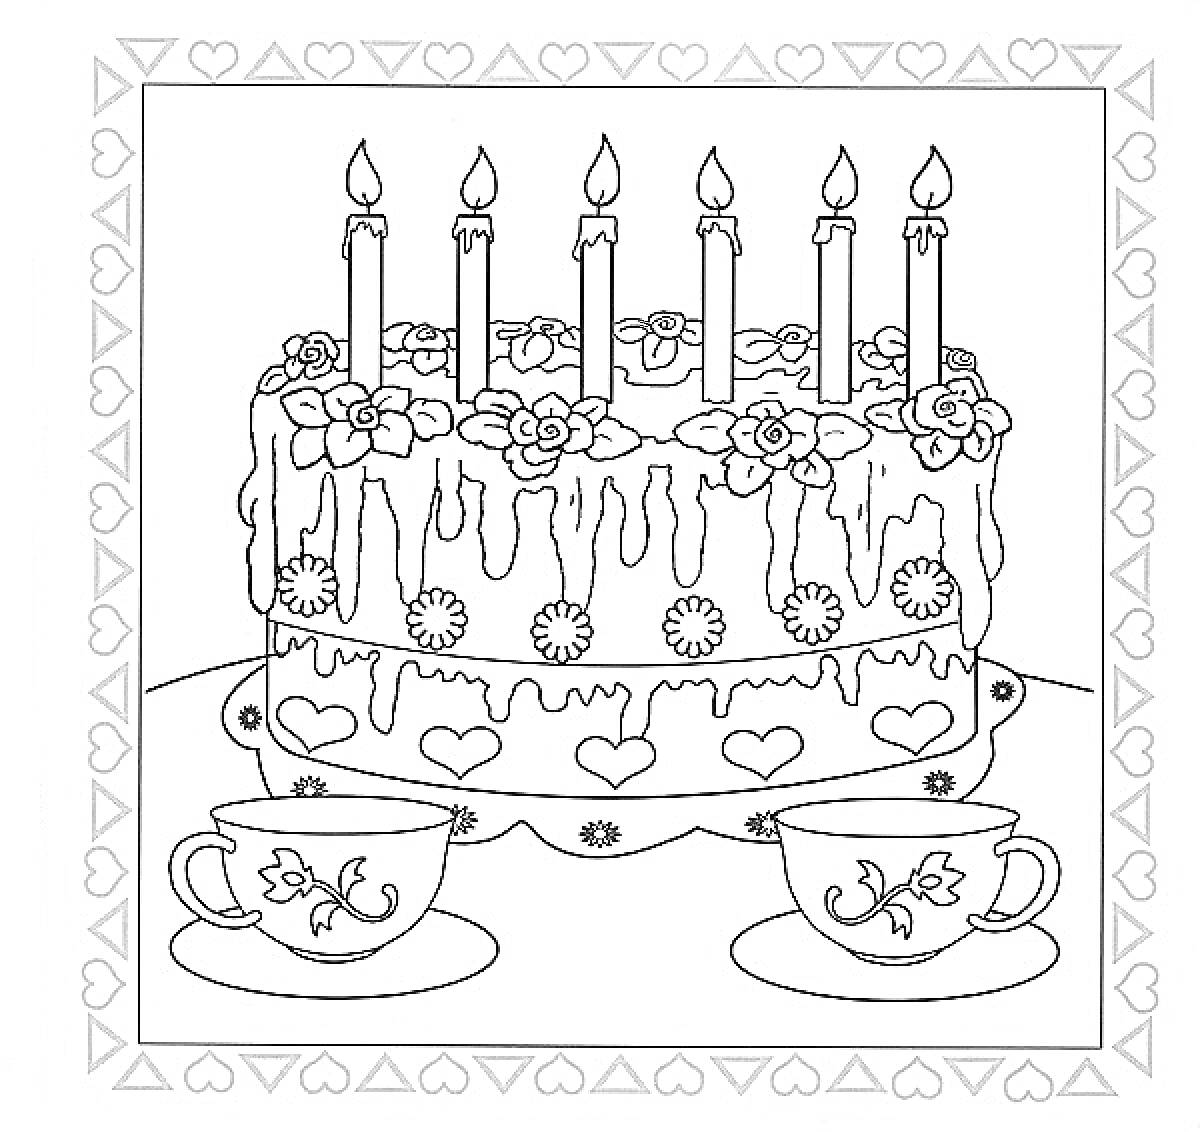 Торт с шестью свечами и чашки на столе с узорами в рамке из сердечек